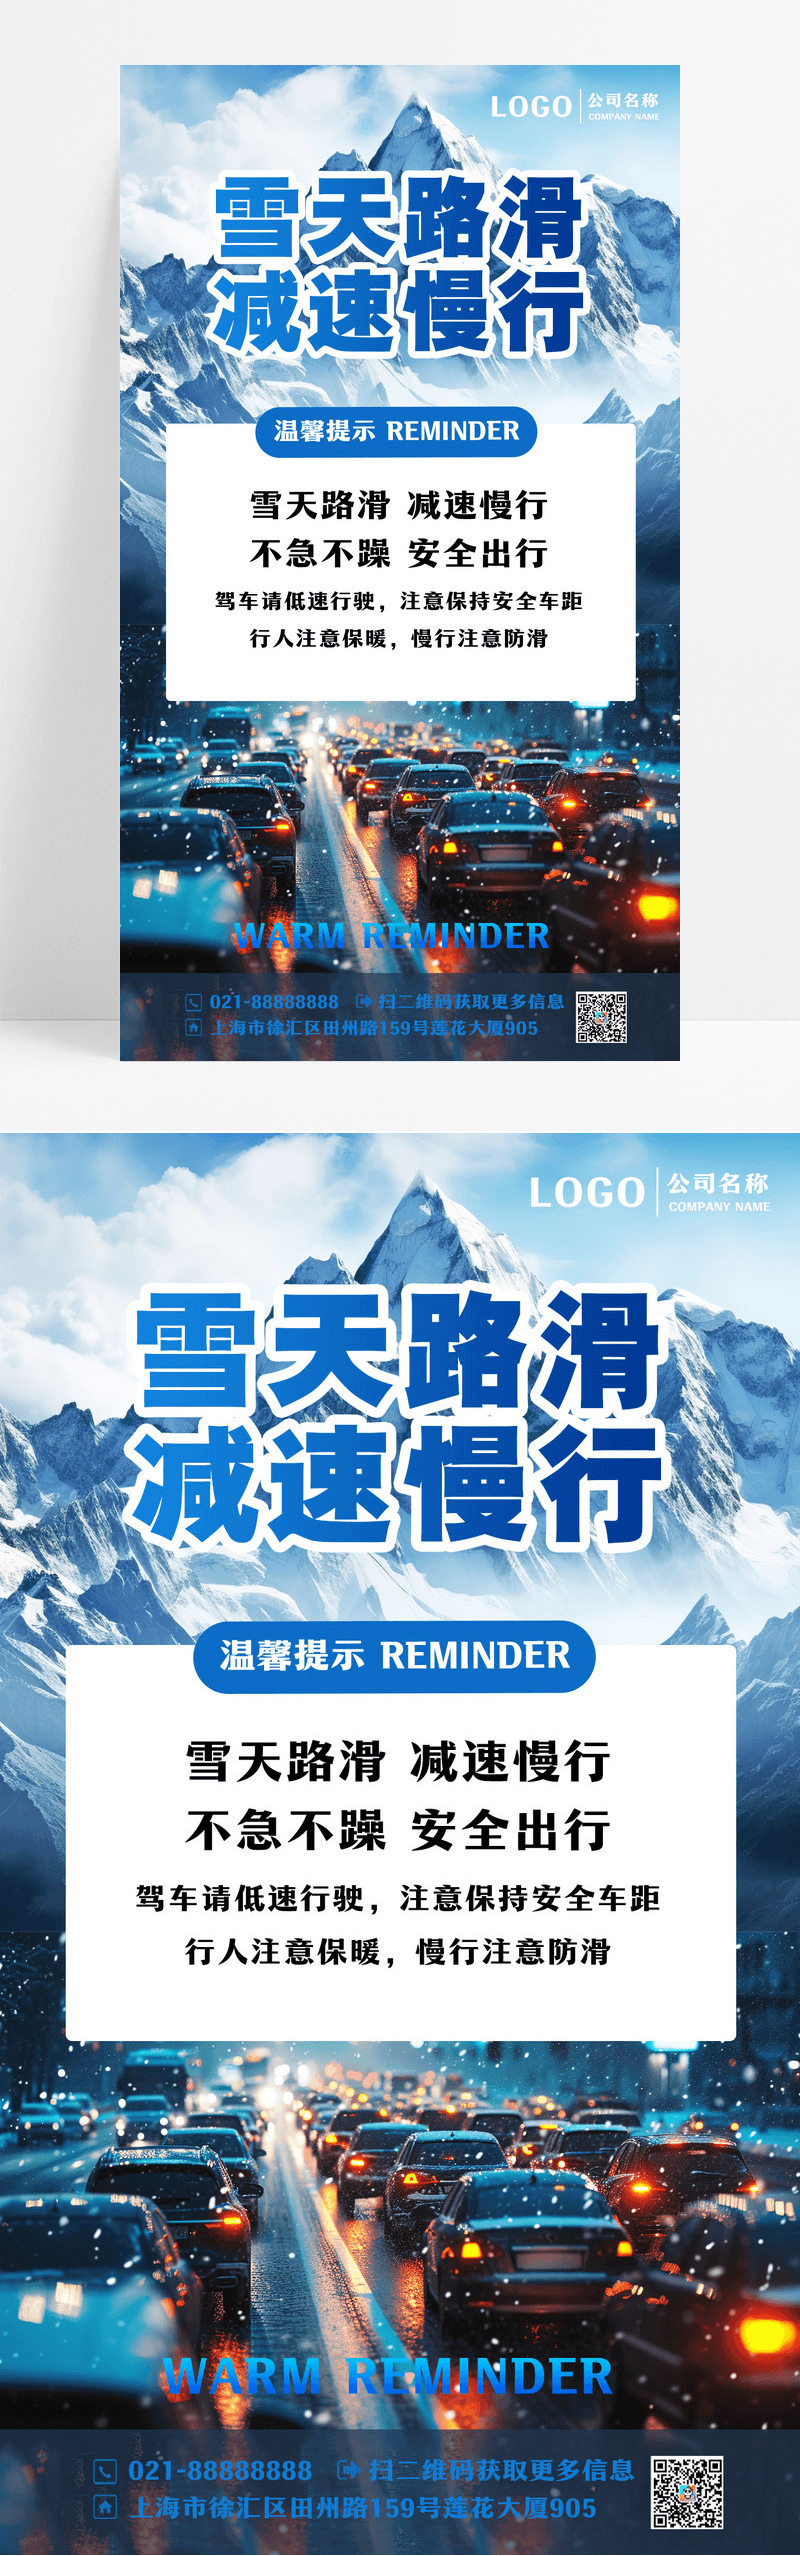 温馨提醒雪天路滑减速慢行摄影图蓝色渐变广告宣传海报设计